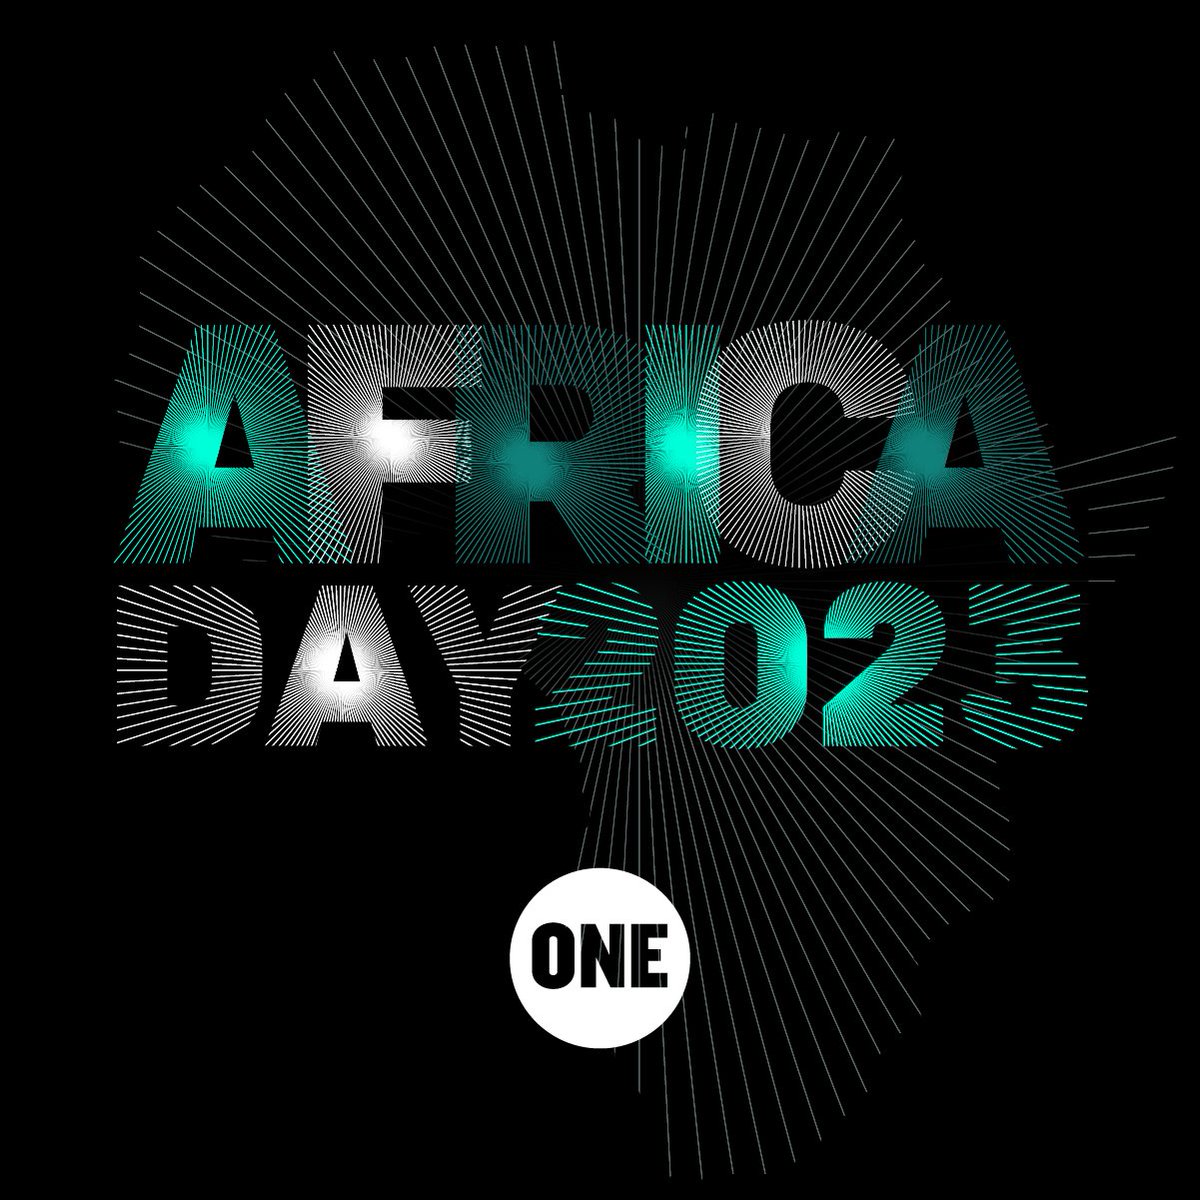 Il 25 maggio è l’Africa Day,celebrazione della creazione dell’Organizzazione dell’Unità Africana nel. La giornata punta ad onorare e riconoscere la solidarietà africana, l’unità nella diversità, creatività, sfide e successi.
#ONEAfricaDay #AfricaDay2023 #AfCFTA